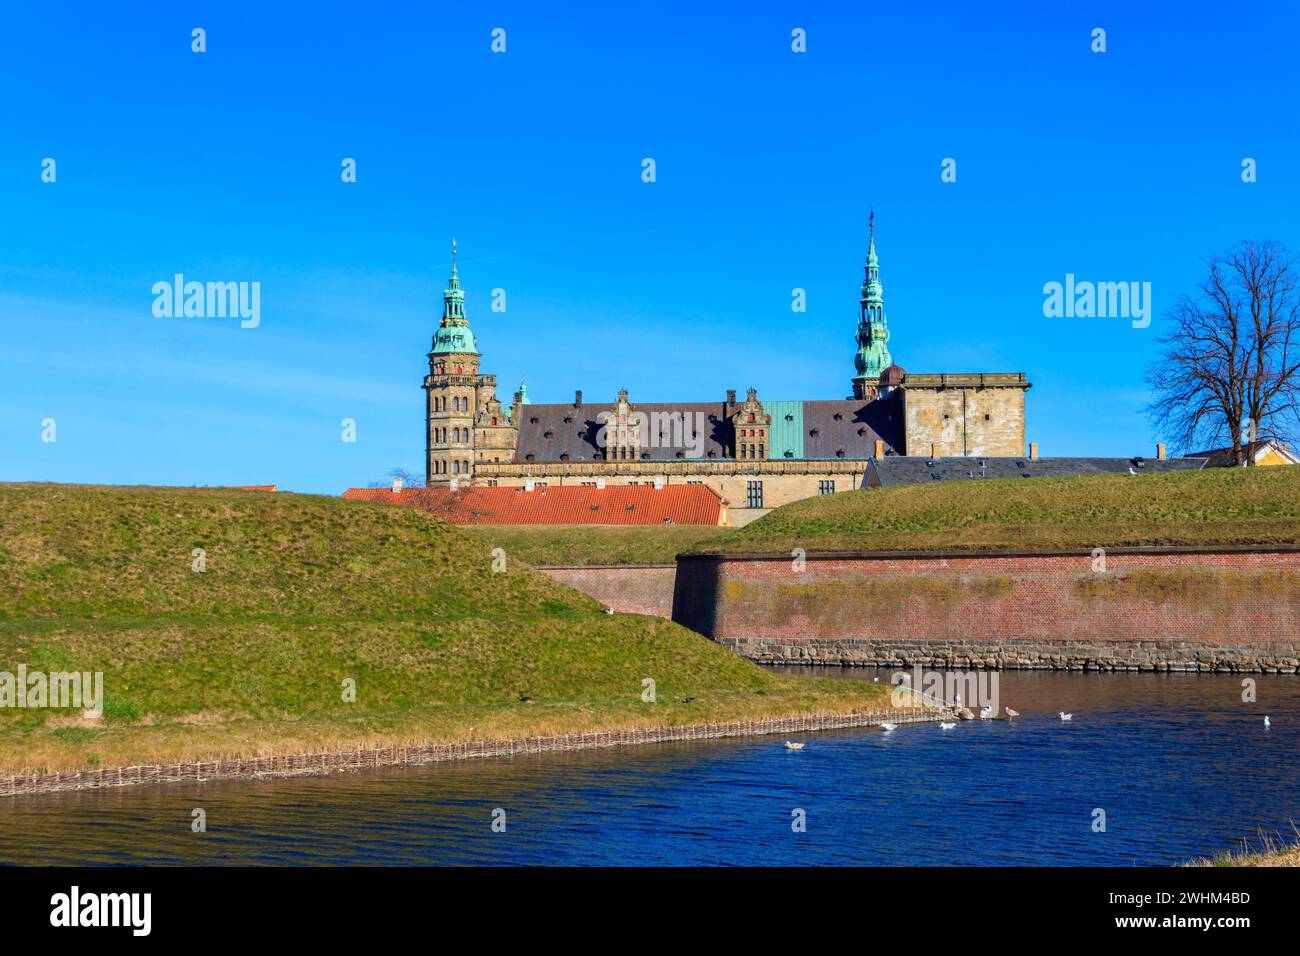 View of Kronborg Castle and Oresund strait in Helsingor (Elsinore), Denmark Stock Photo